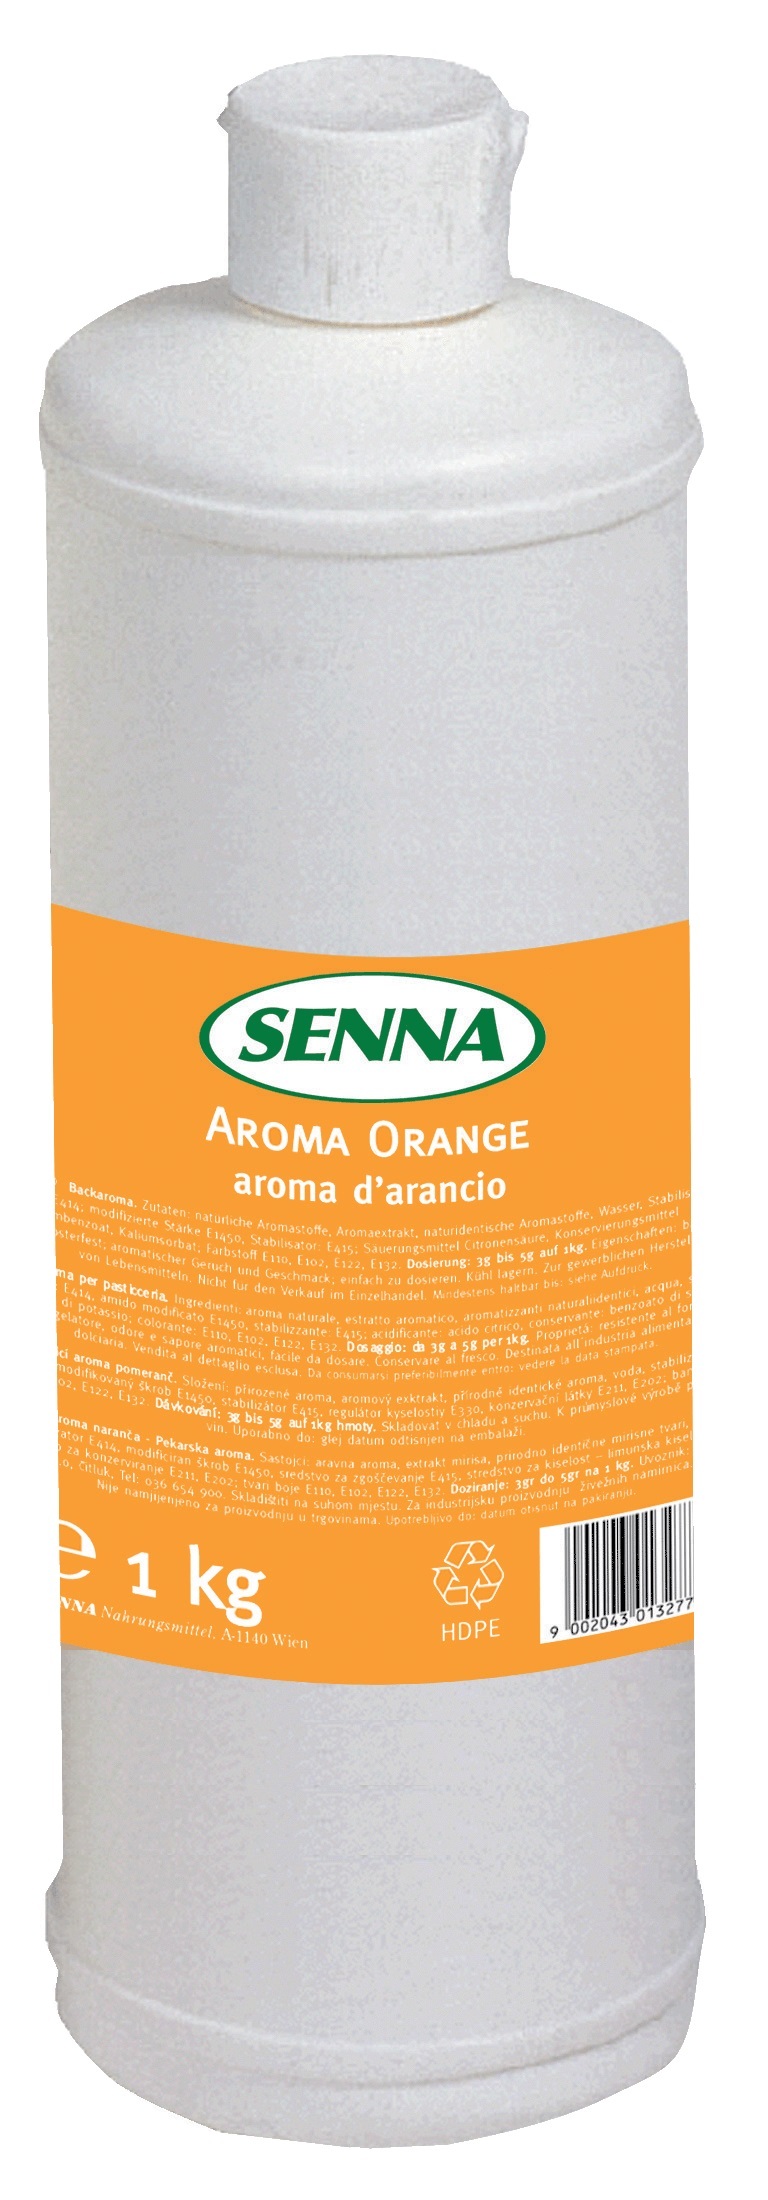 1248330 Senna Aroma Orange